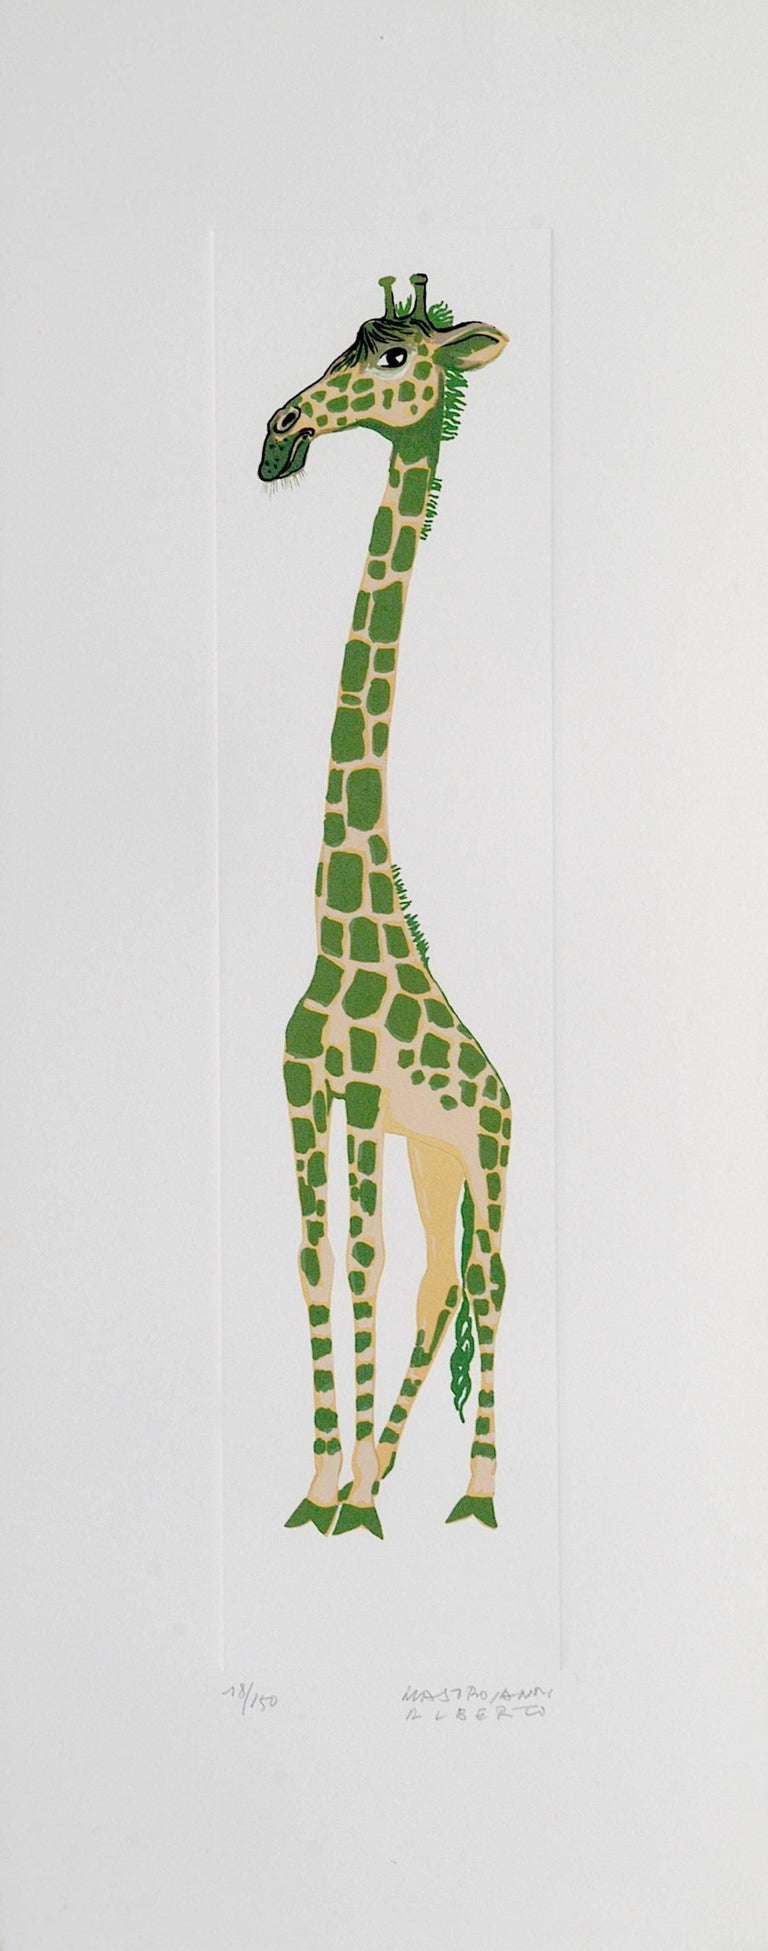 Alberto Mastroianni Animal Print - Giraffe - Original Lithograph by A. Mastroianni - 1970s